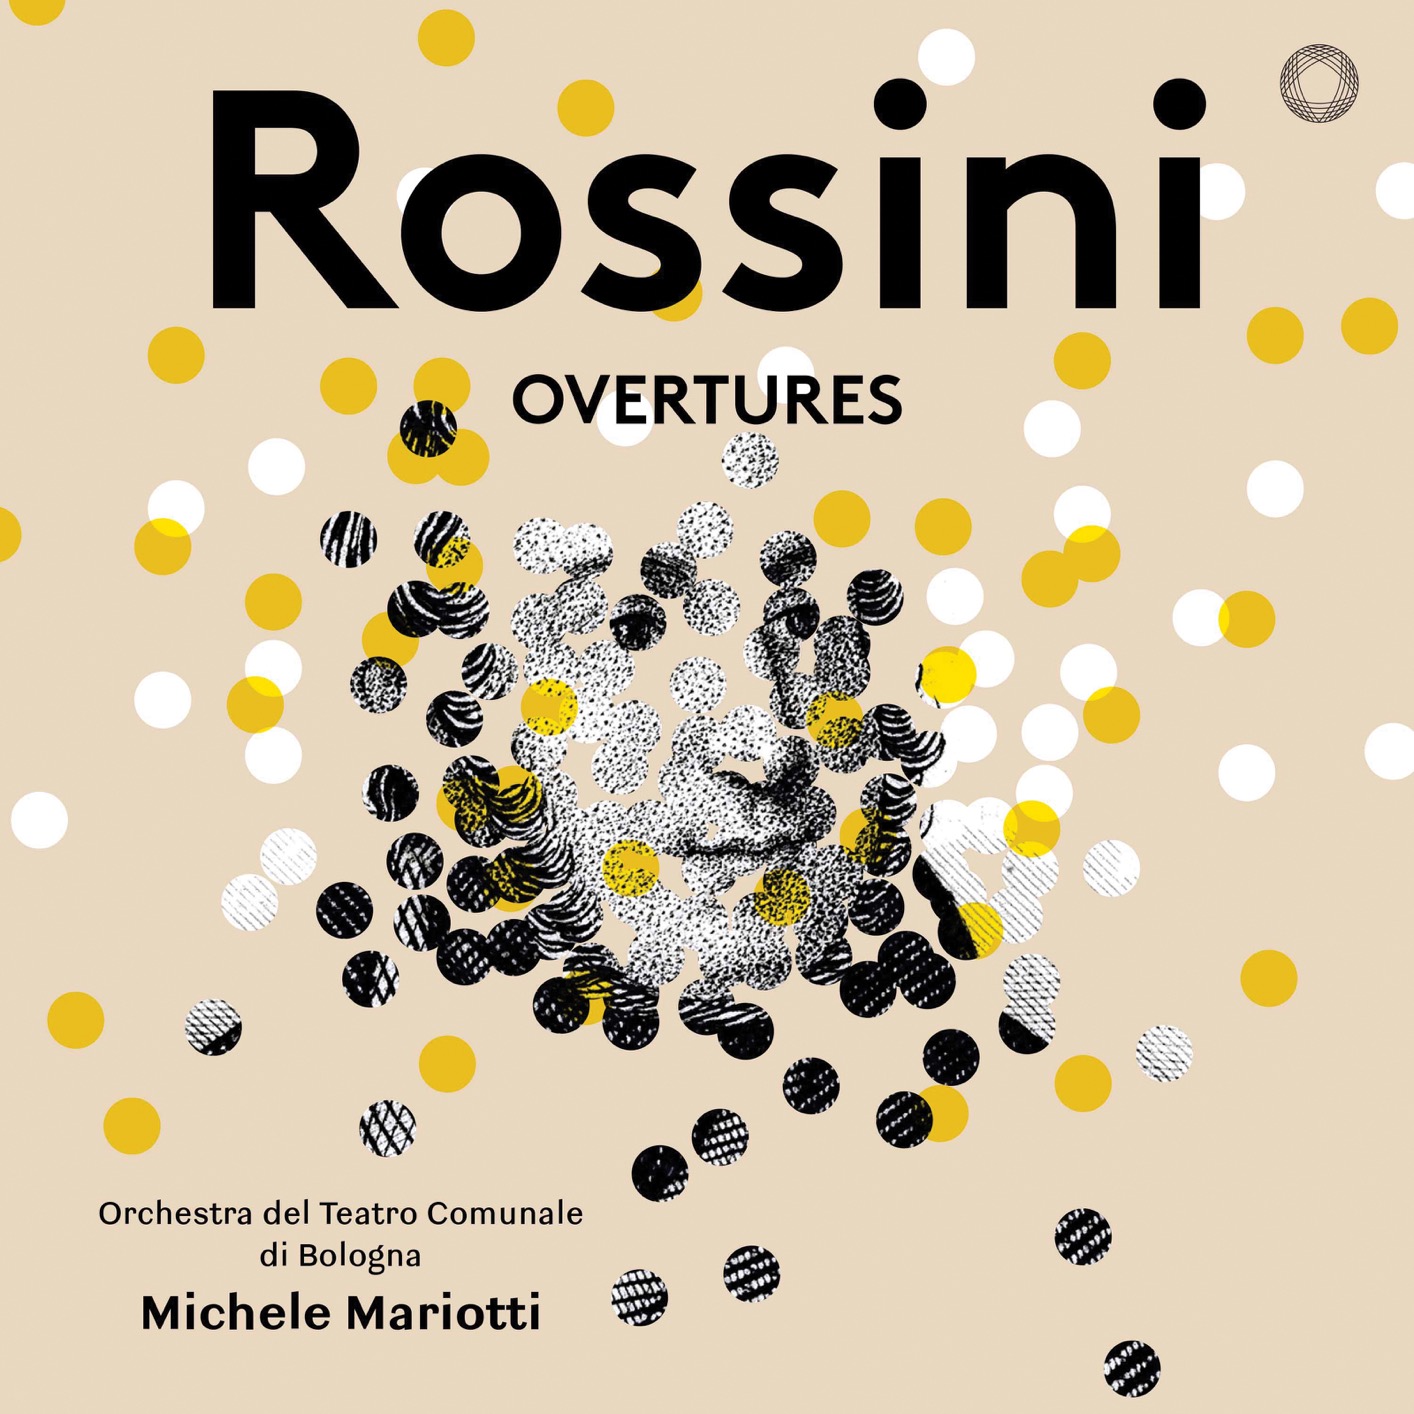 Orchestra del Teatro Comunale di Bologna & Michele Mariotti - Rossini: Overtures (2018) [FLAC 24bit/96kHz]